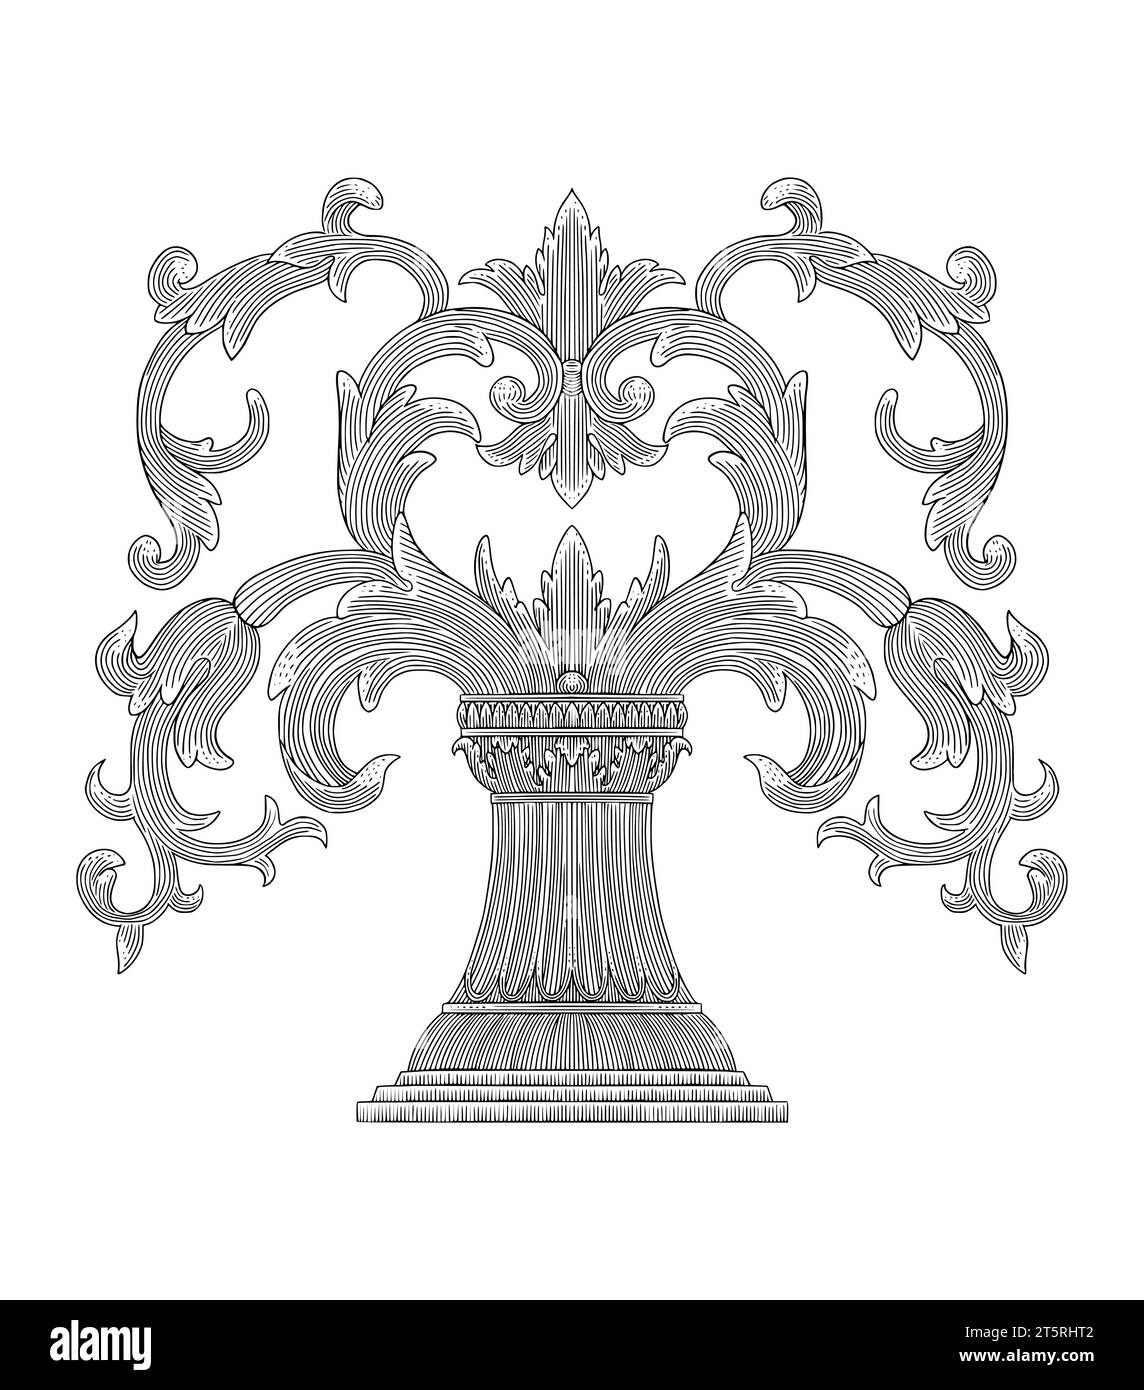 Säule mit floralem Ornament, Vintage Gravur Zeichnung Stil Vektor Illustration Stock Vektor